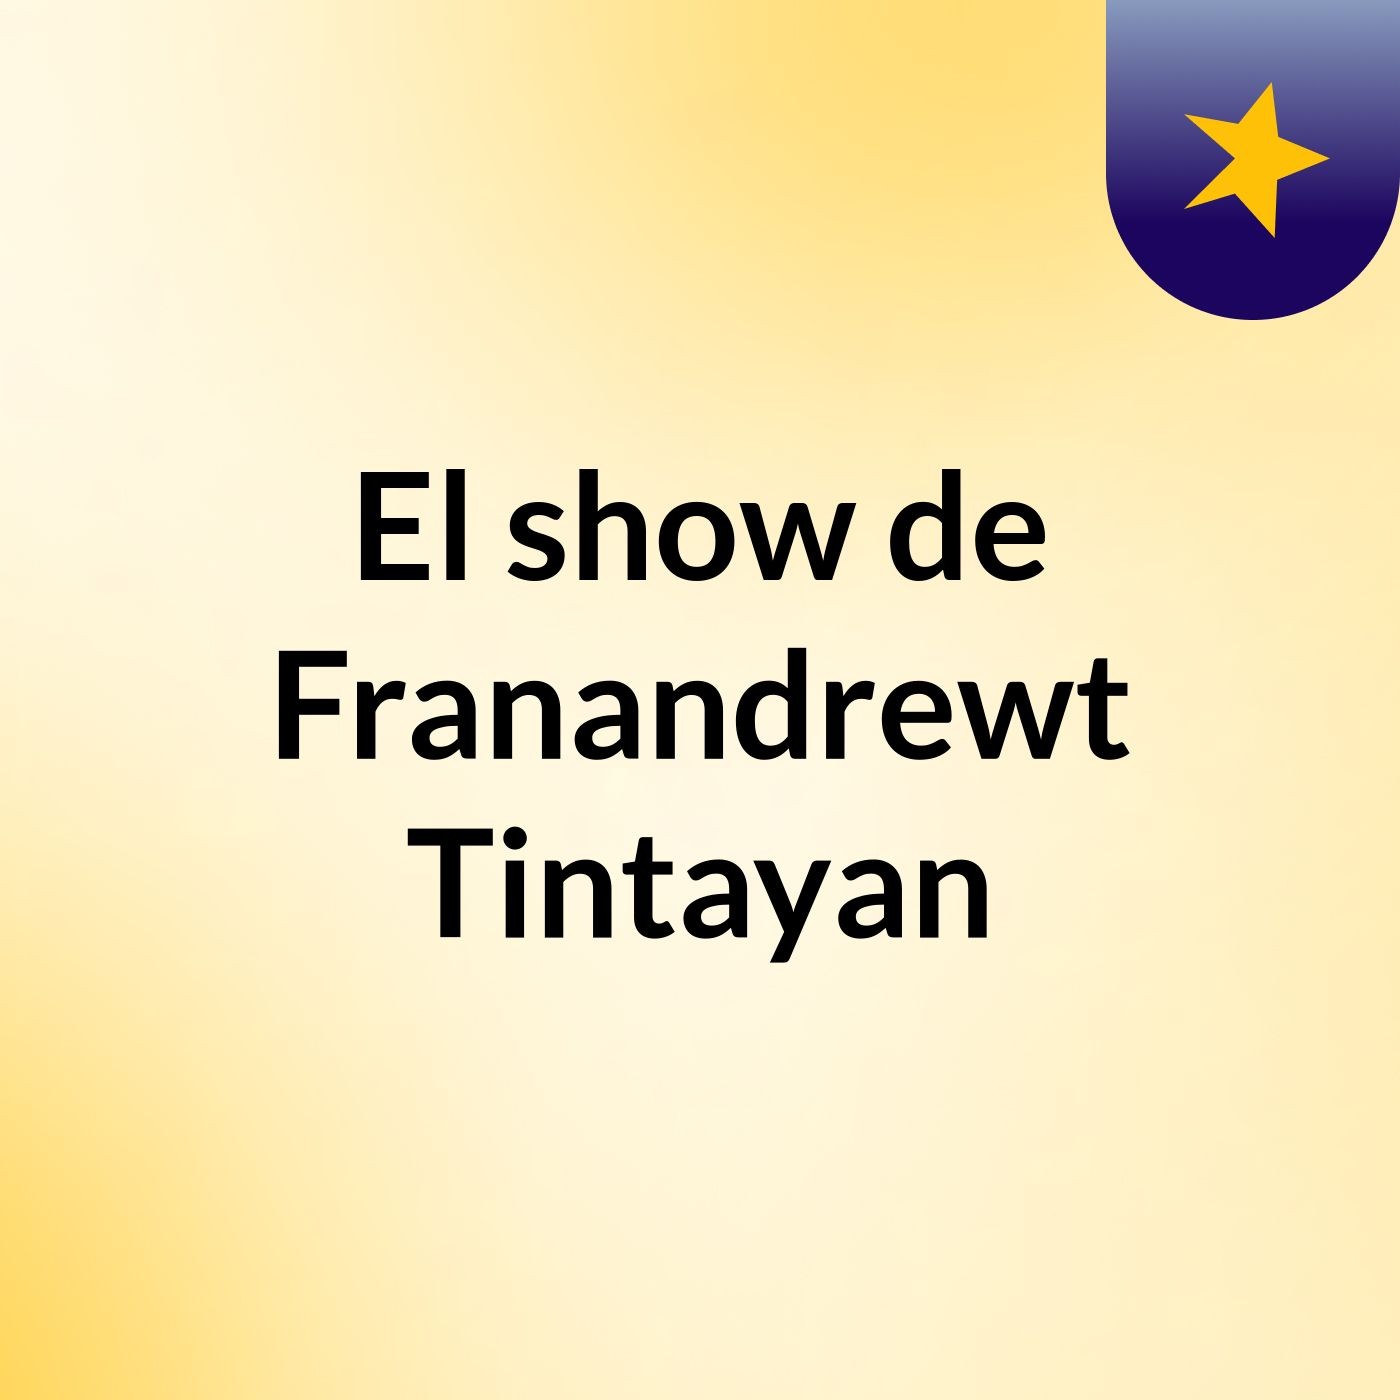 El show de Franandrewt Tintayan